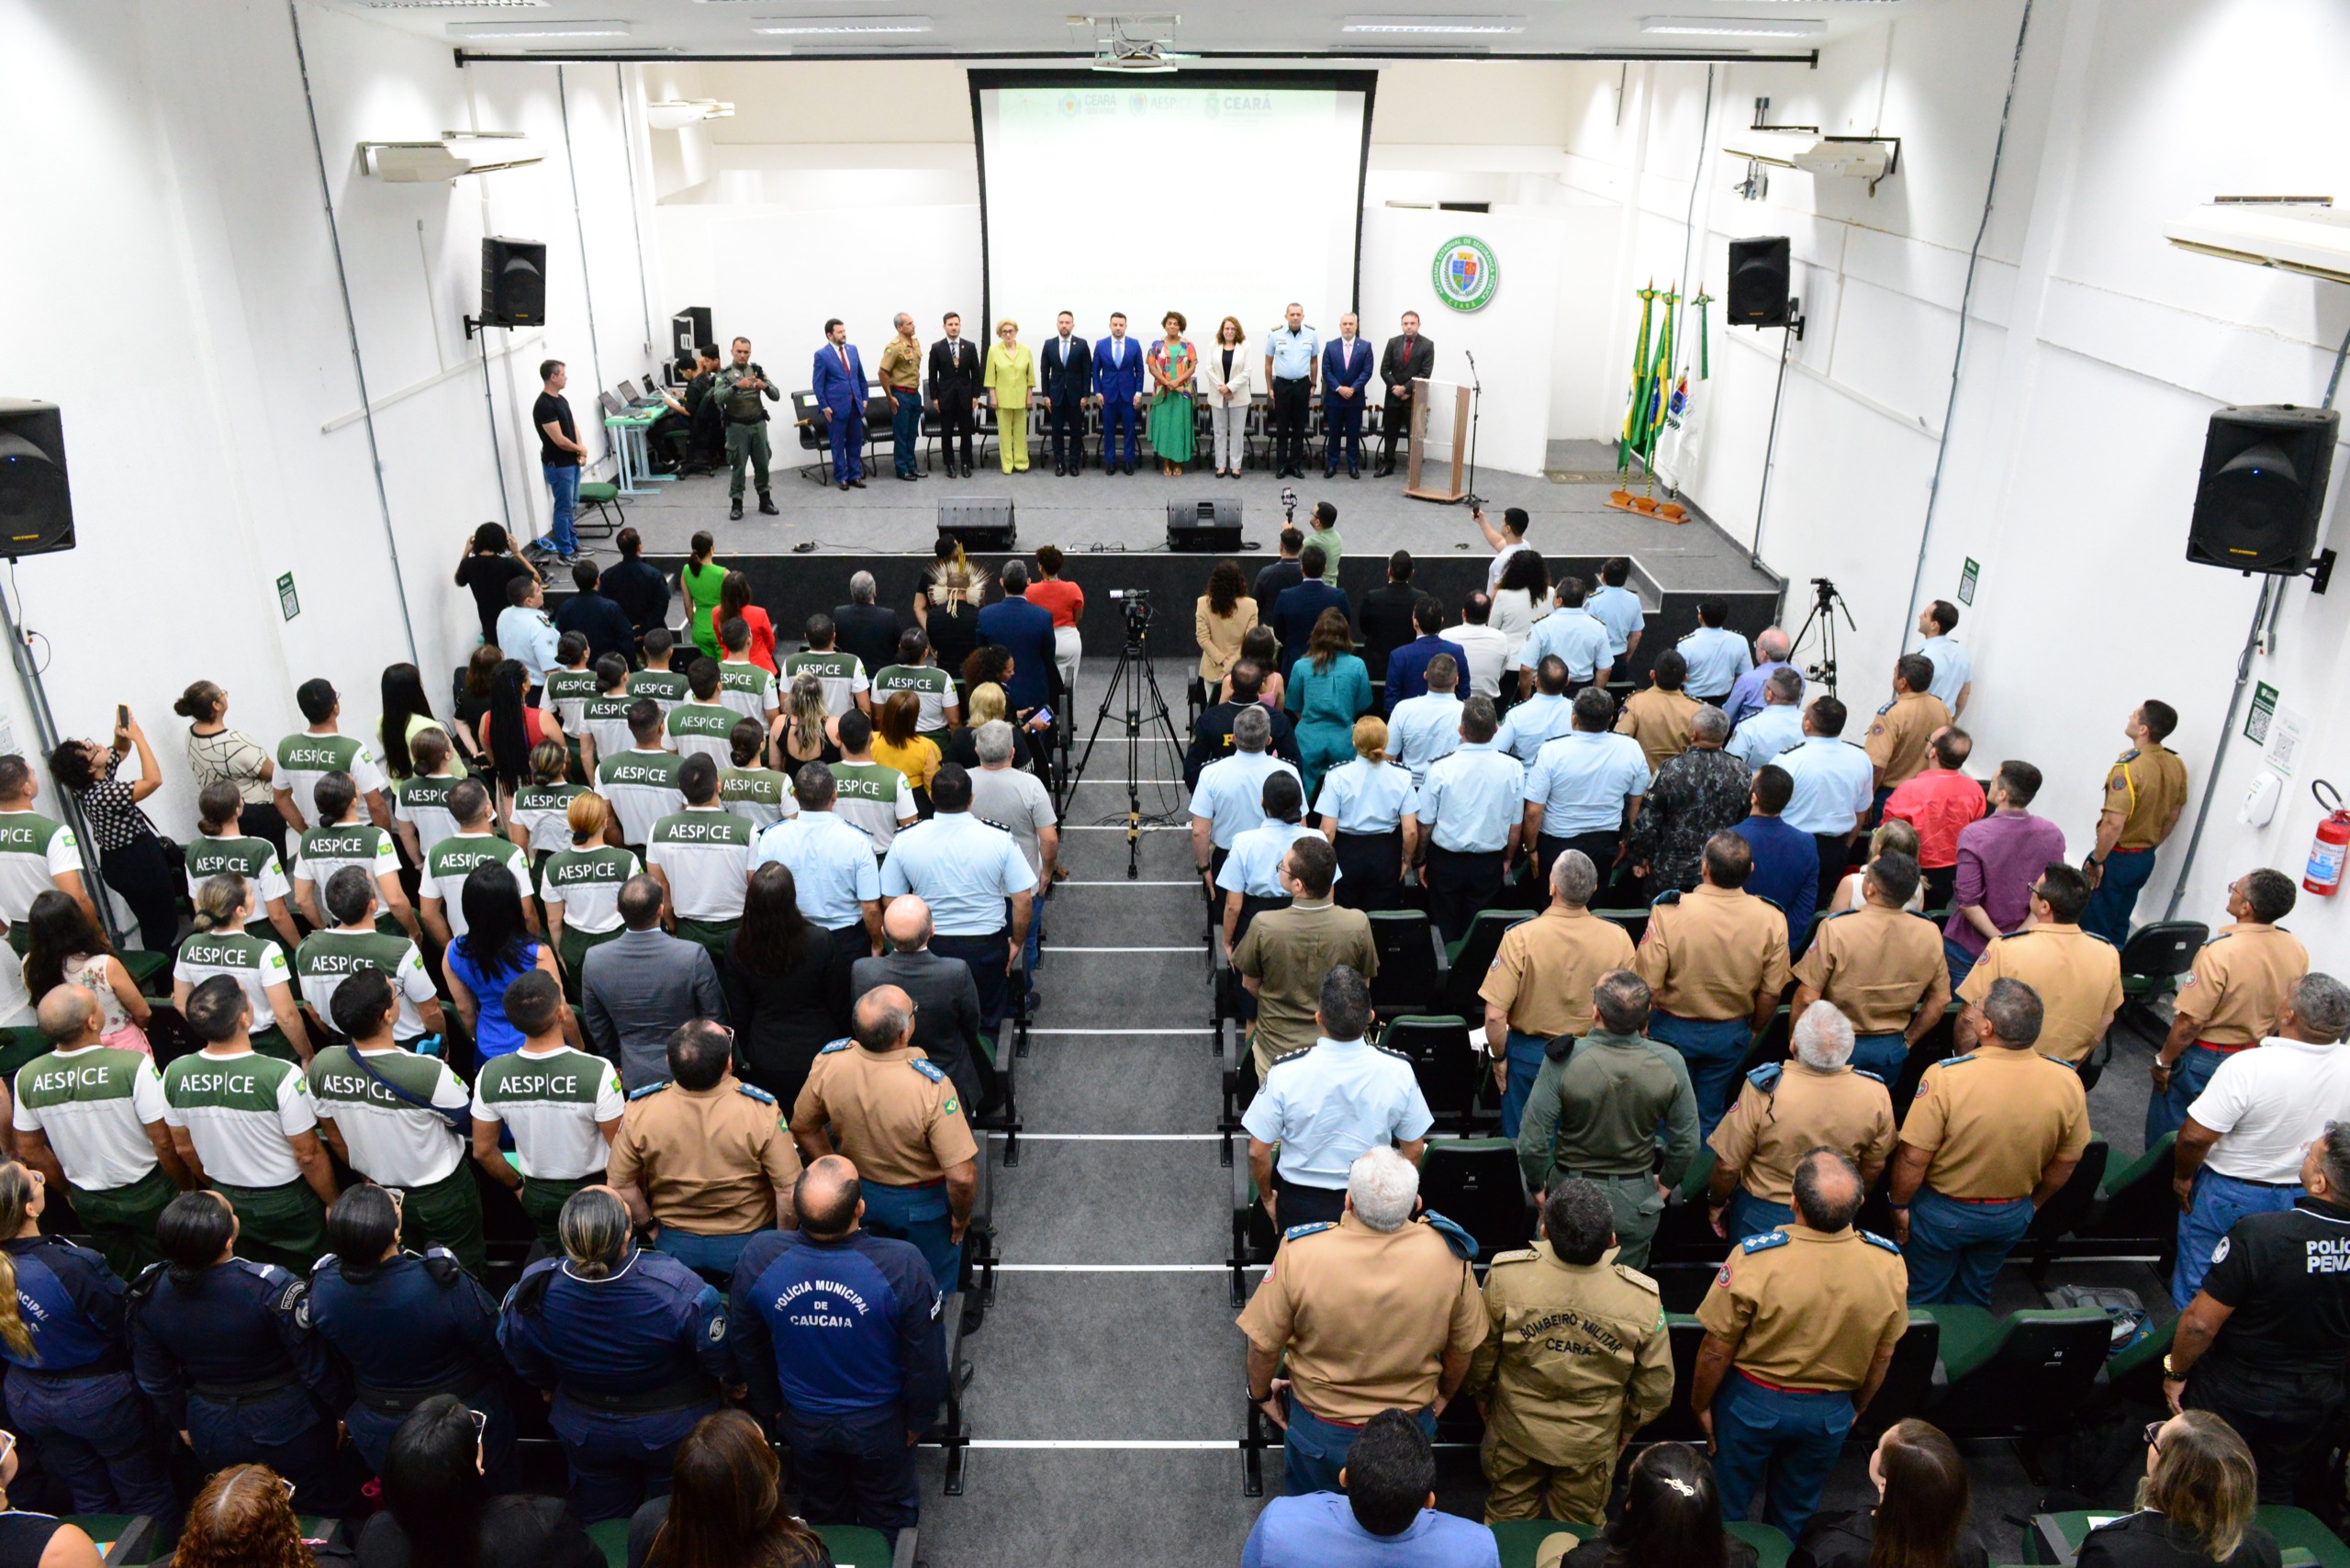 Academia abre Seminário Internacional sobre Segurança Pública, Direitos Humanos e Atuação Policial Junto aos Grupos Vulneráveis